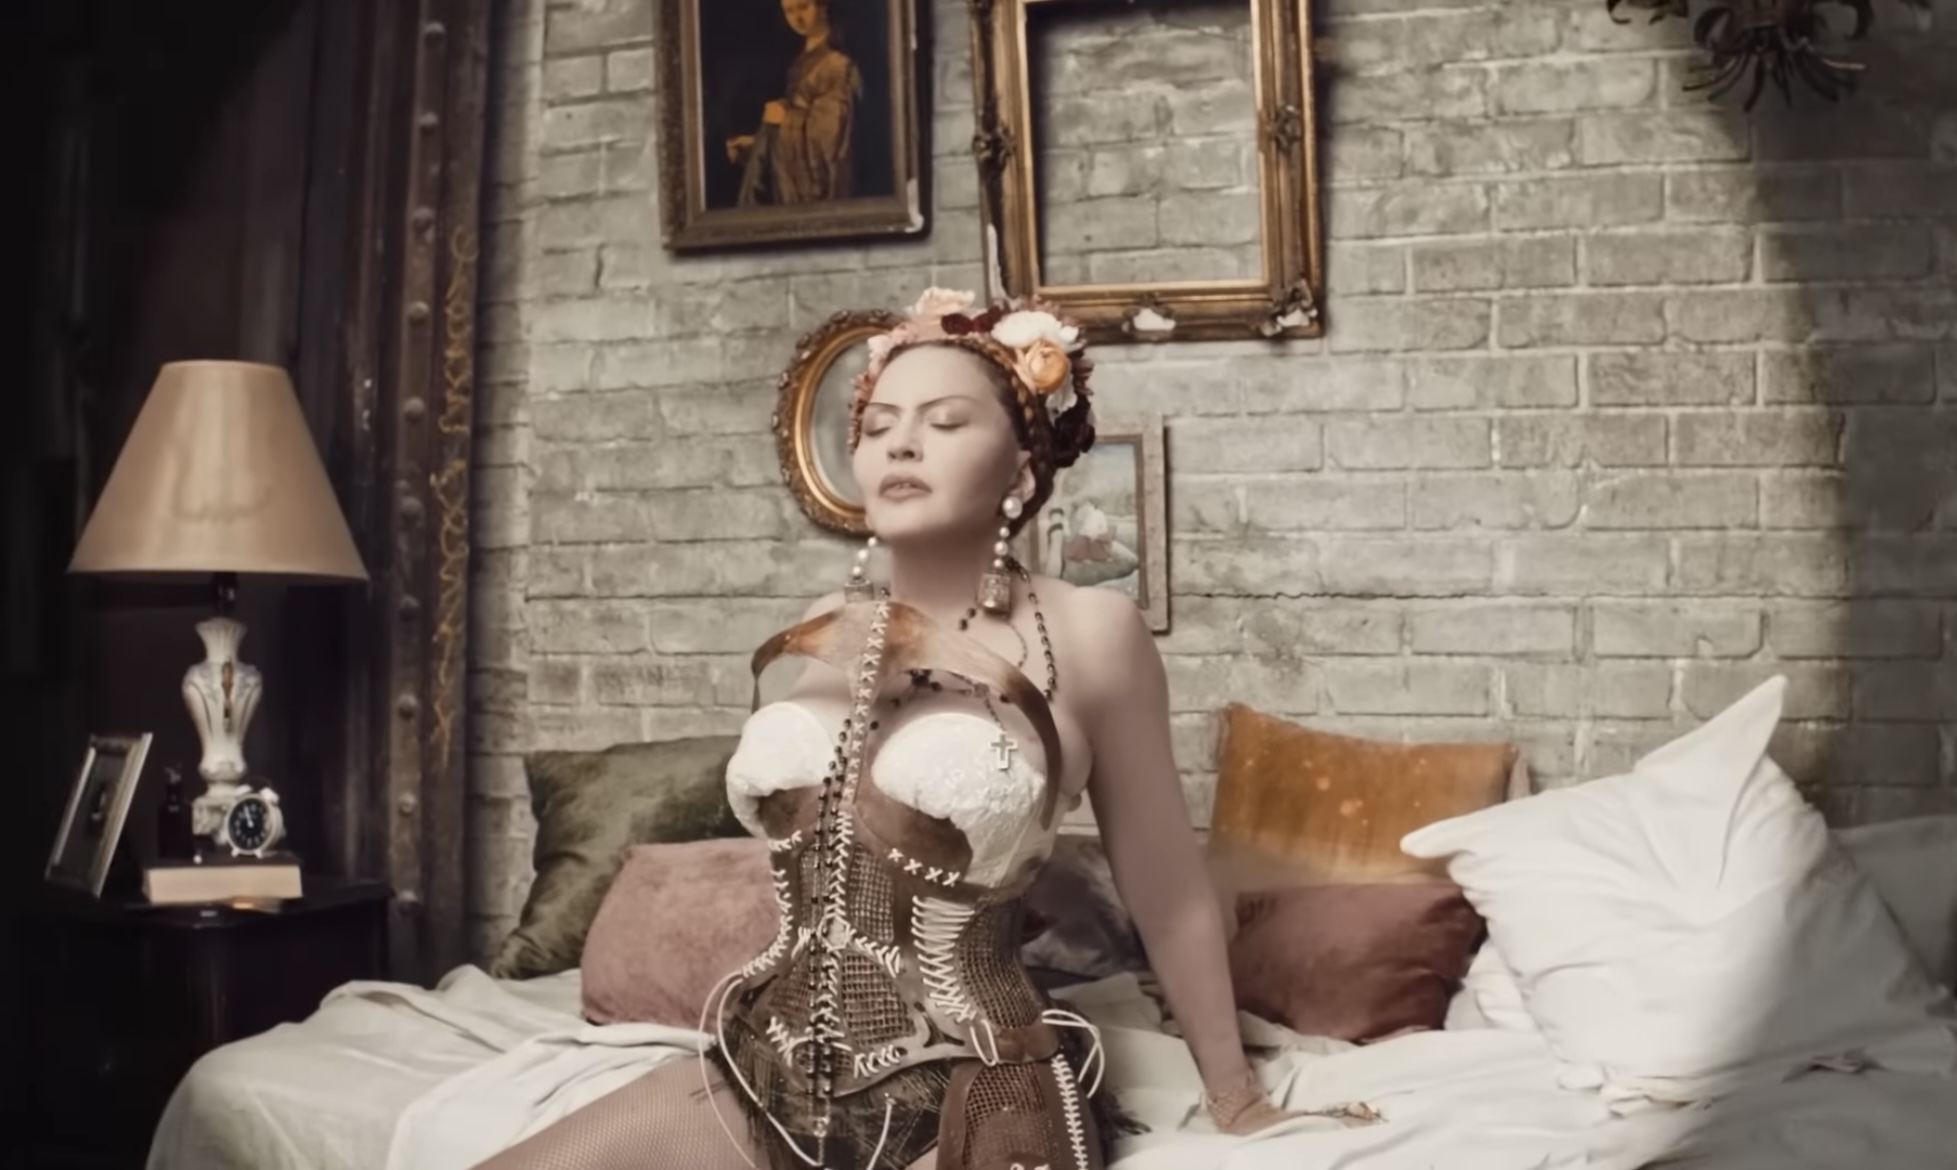 Мадонна выпустила свой музыкальный фильм, в котором появилась в образах Иисуса, Девы Марии и демона. Видео